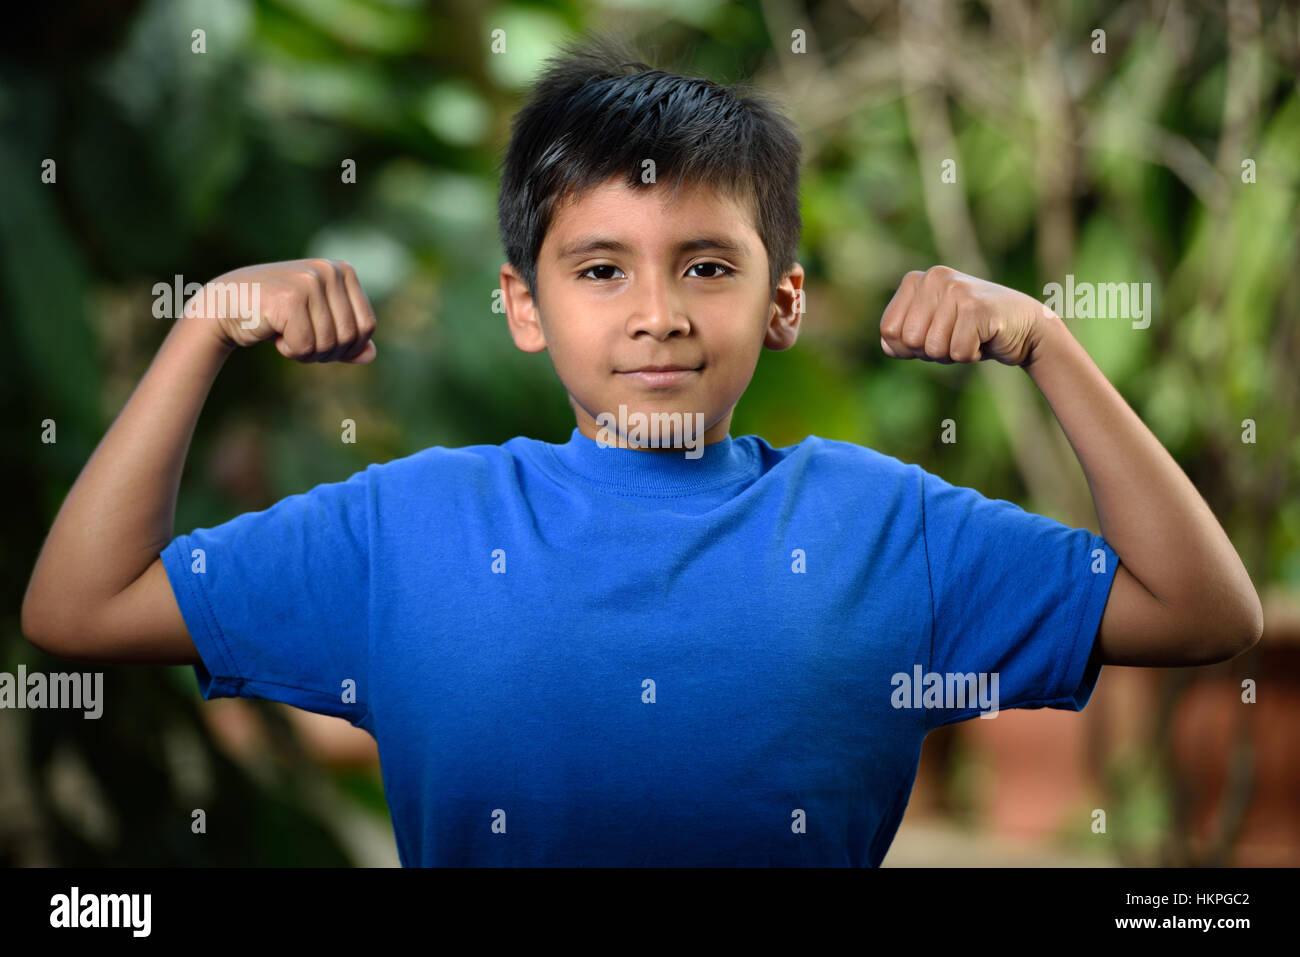 Latino boy mostrano i muscoli nel giardino verde Foto Stock